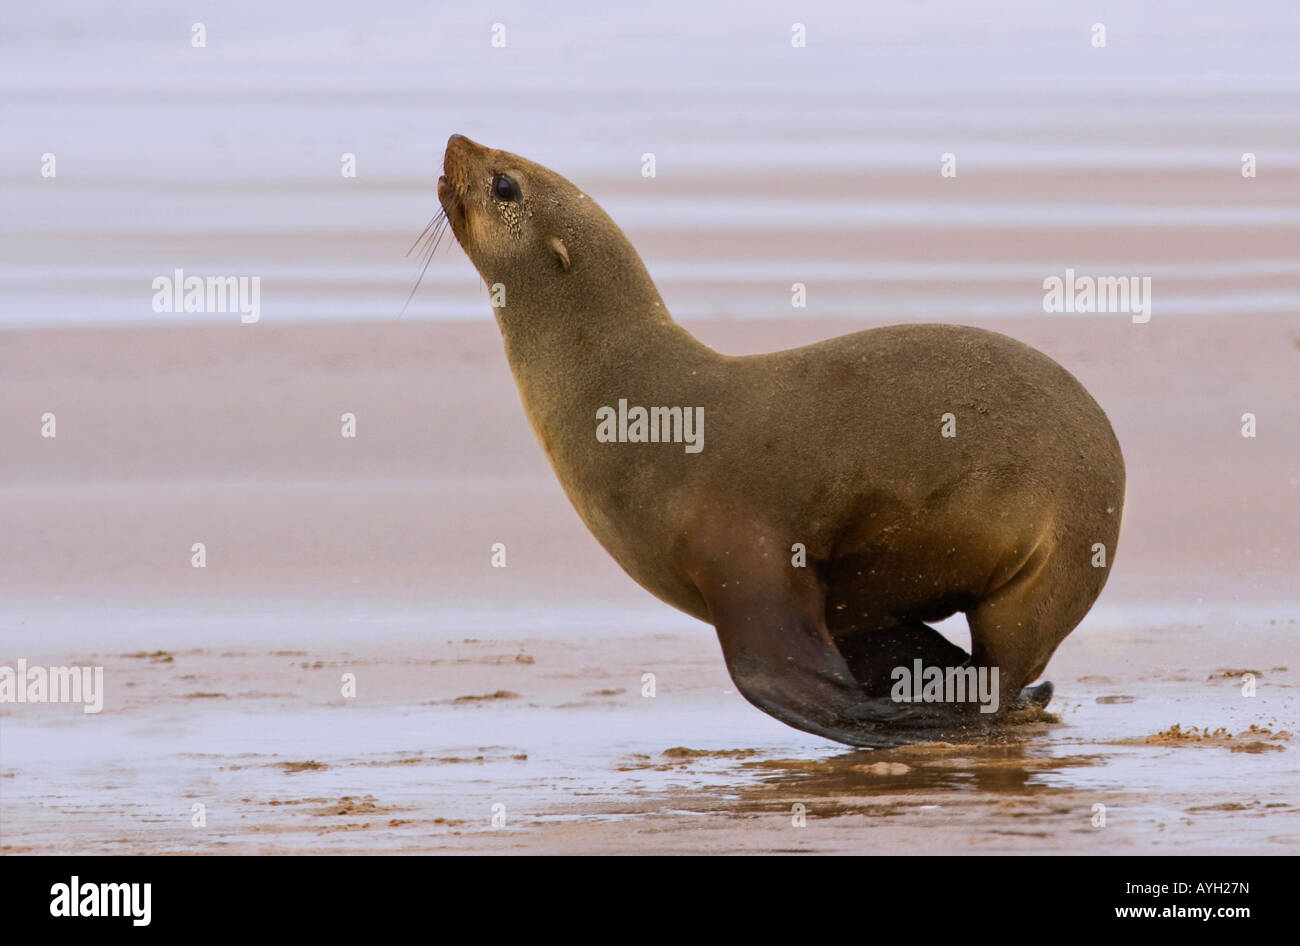 Le phoque à fourrure d'Afrique du Sud sur le sable, la Namibie, l'Afrique Banque D'Images